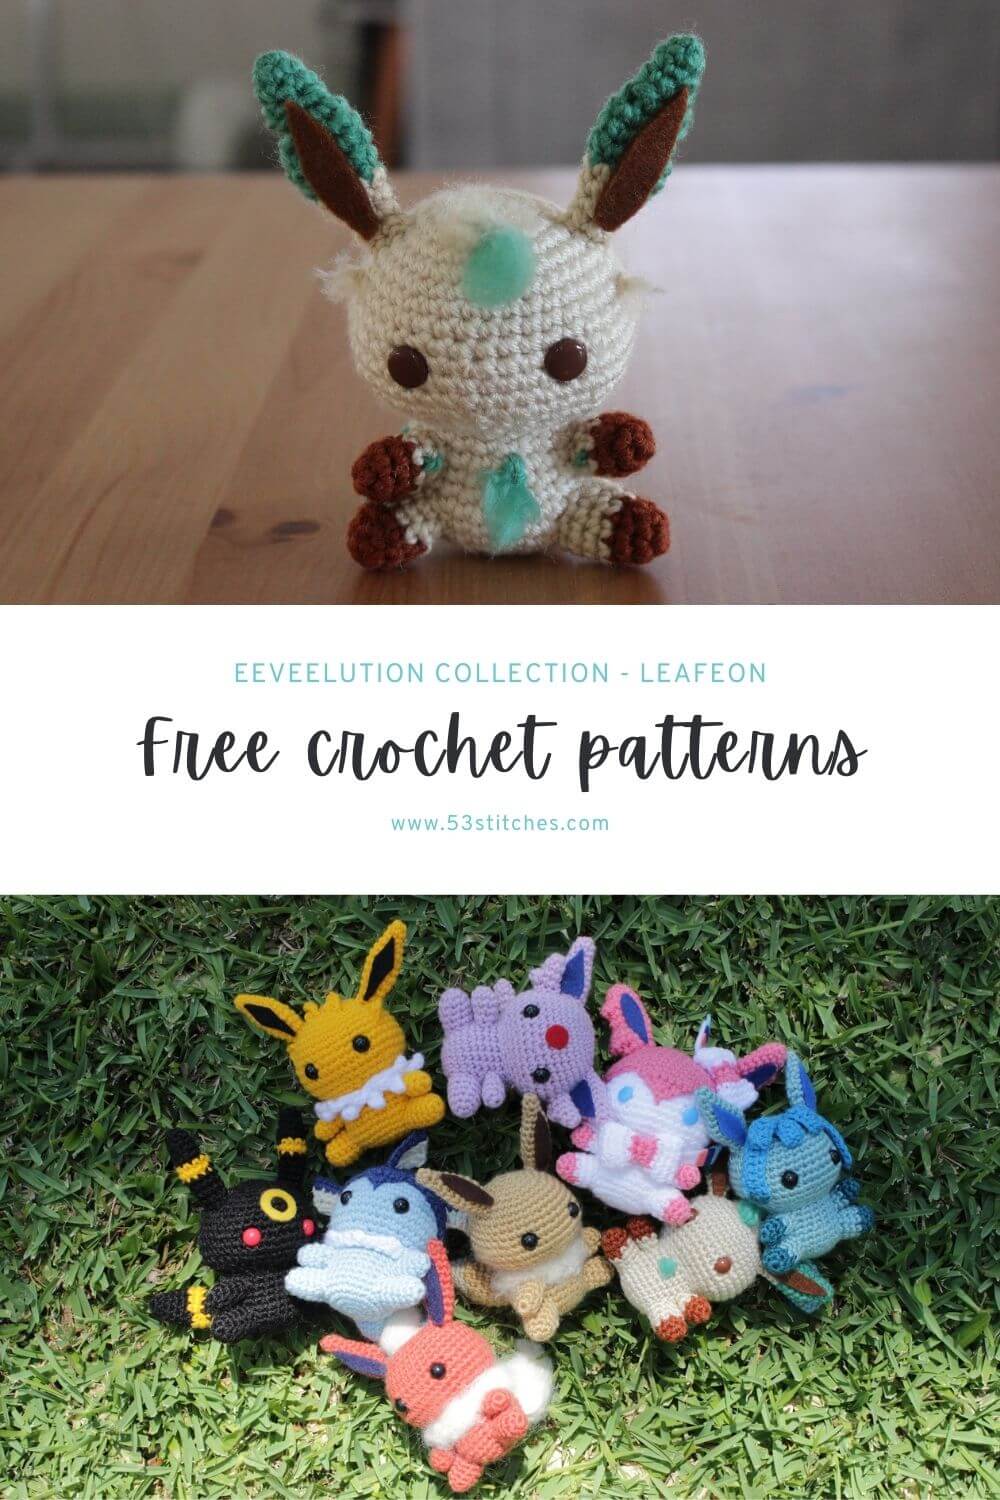 Leafeon crochet pattern